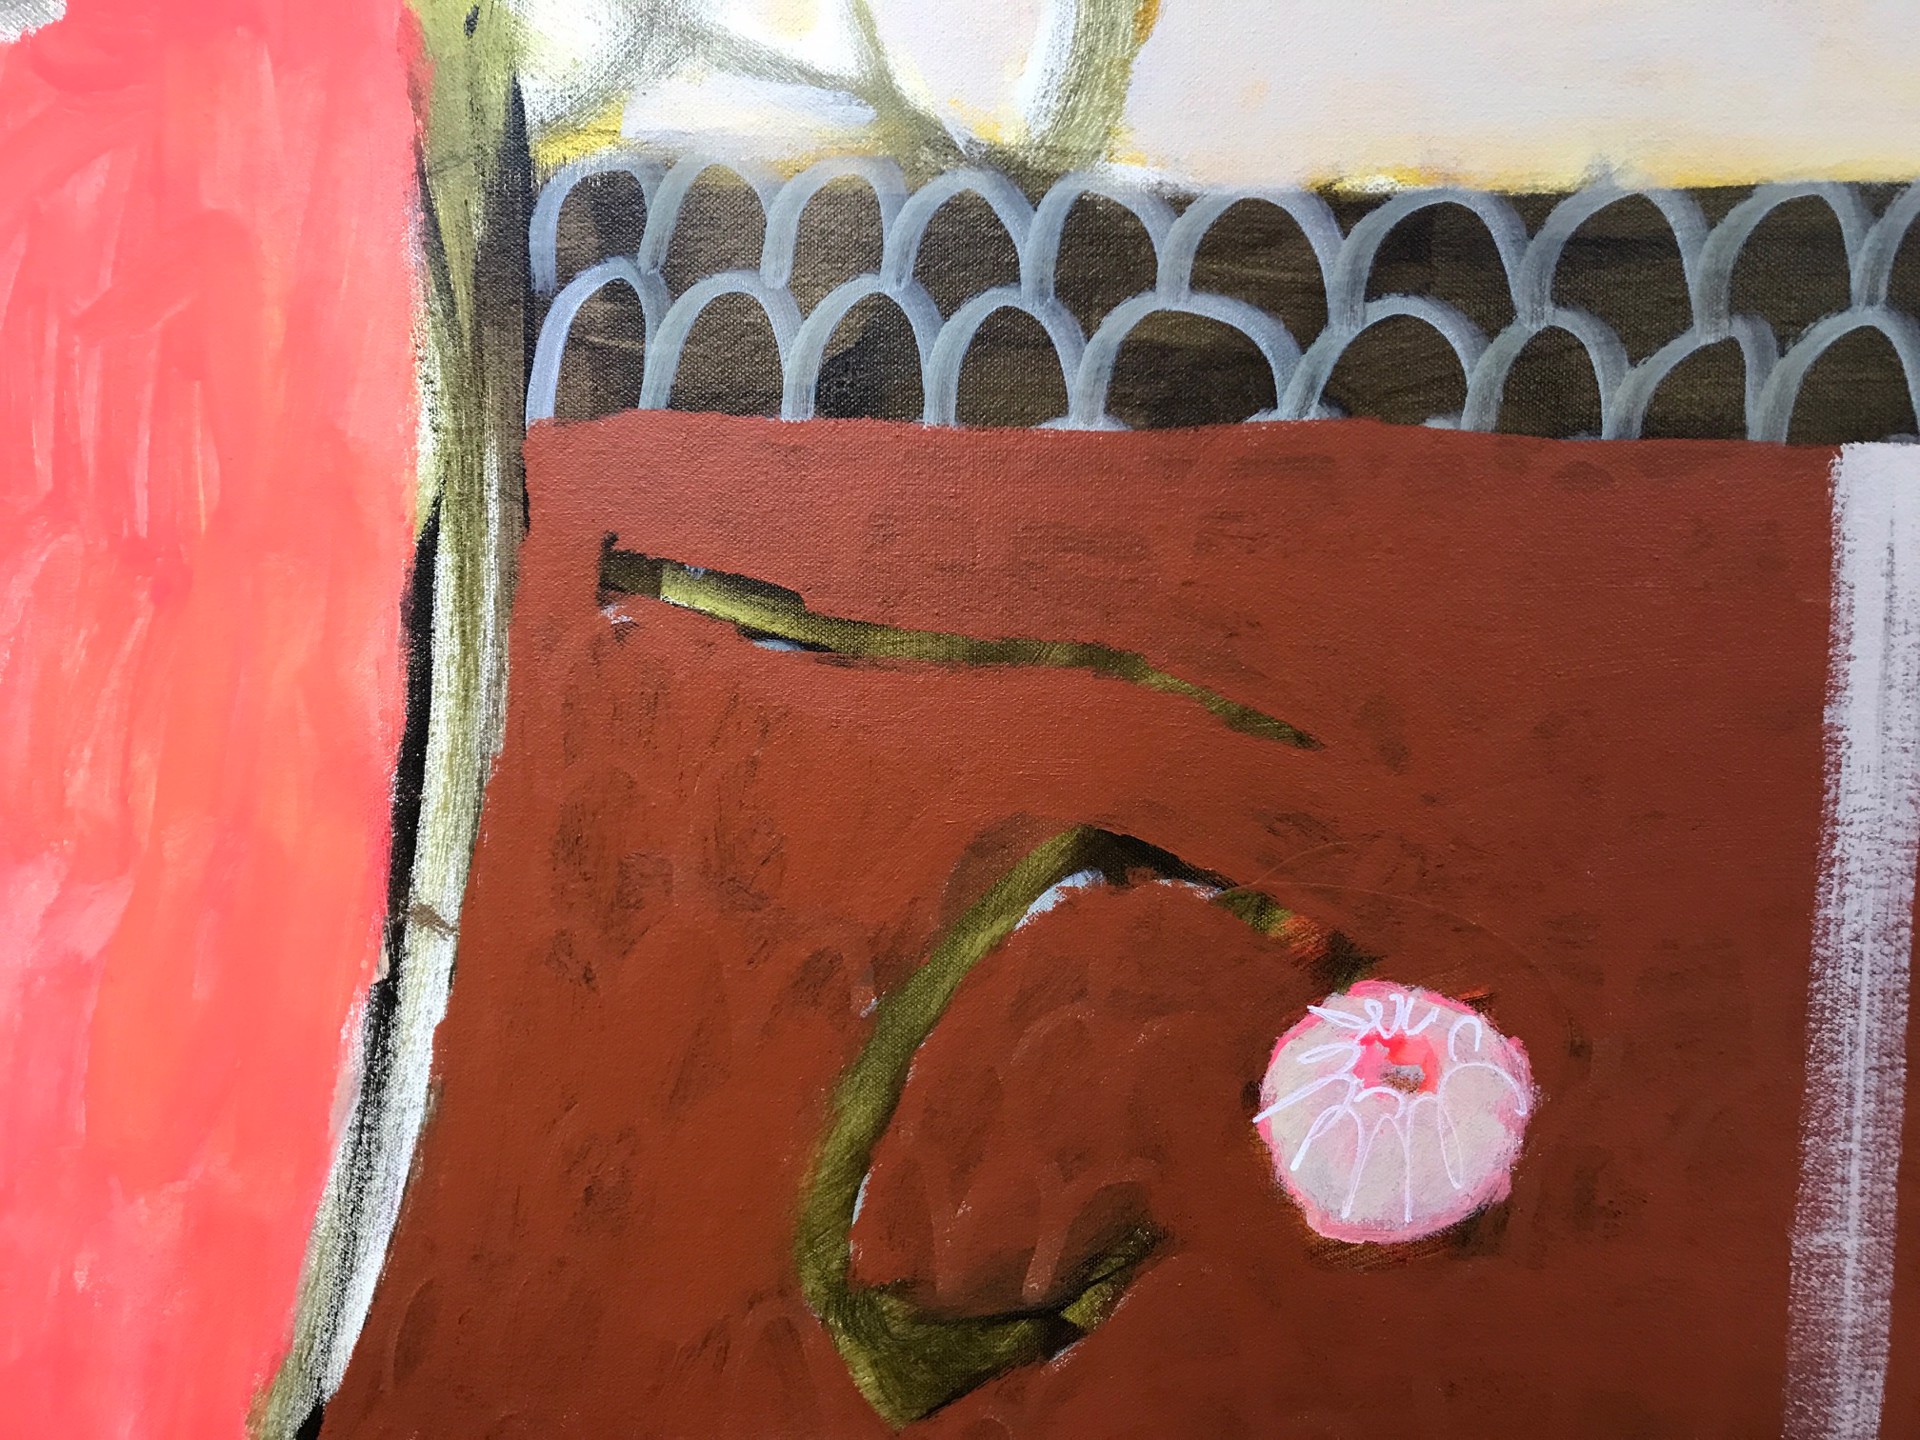 Pink Peonies with Lemons by Rachael Van Dyke